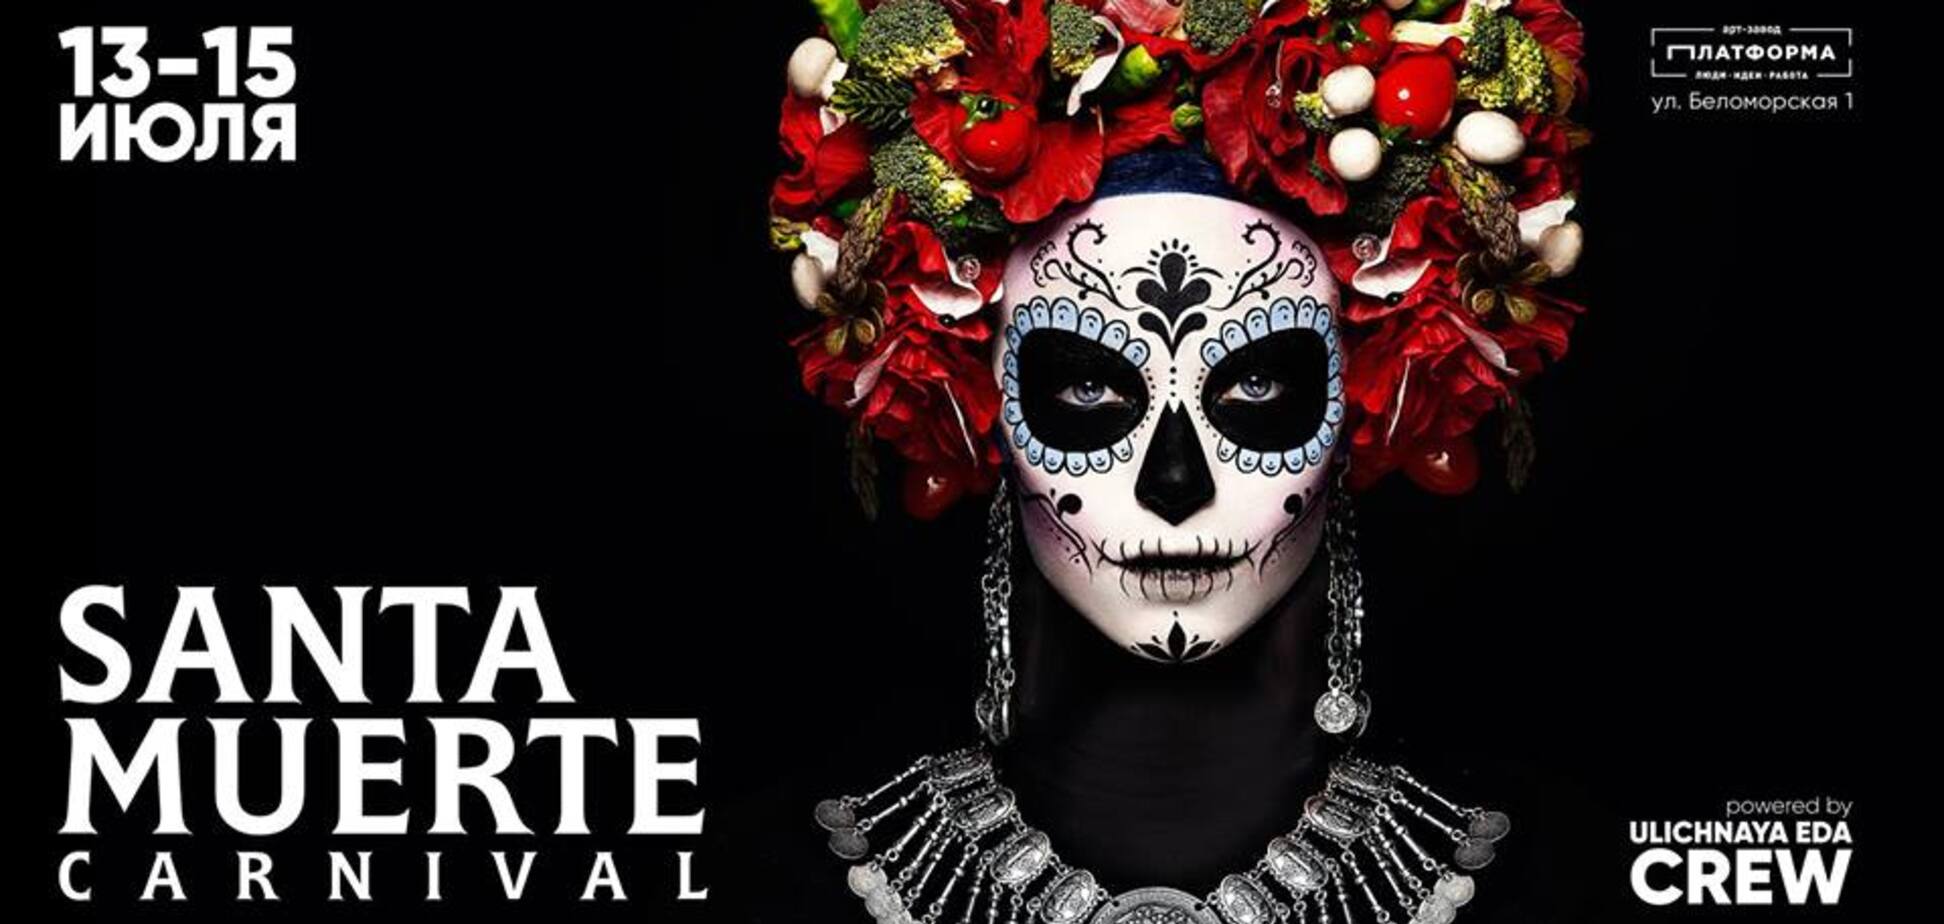 Ночной карнавал Santa Muerte, 13-15.07